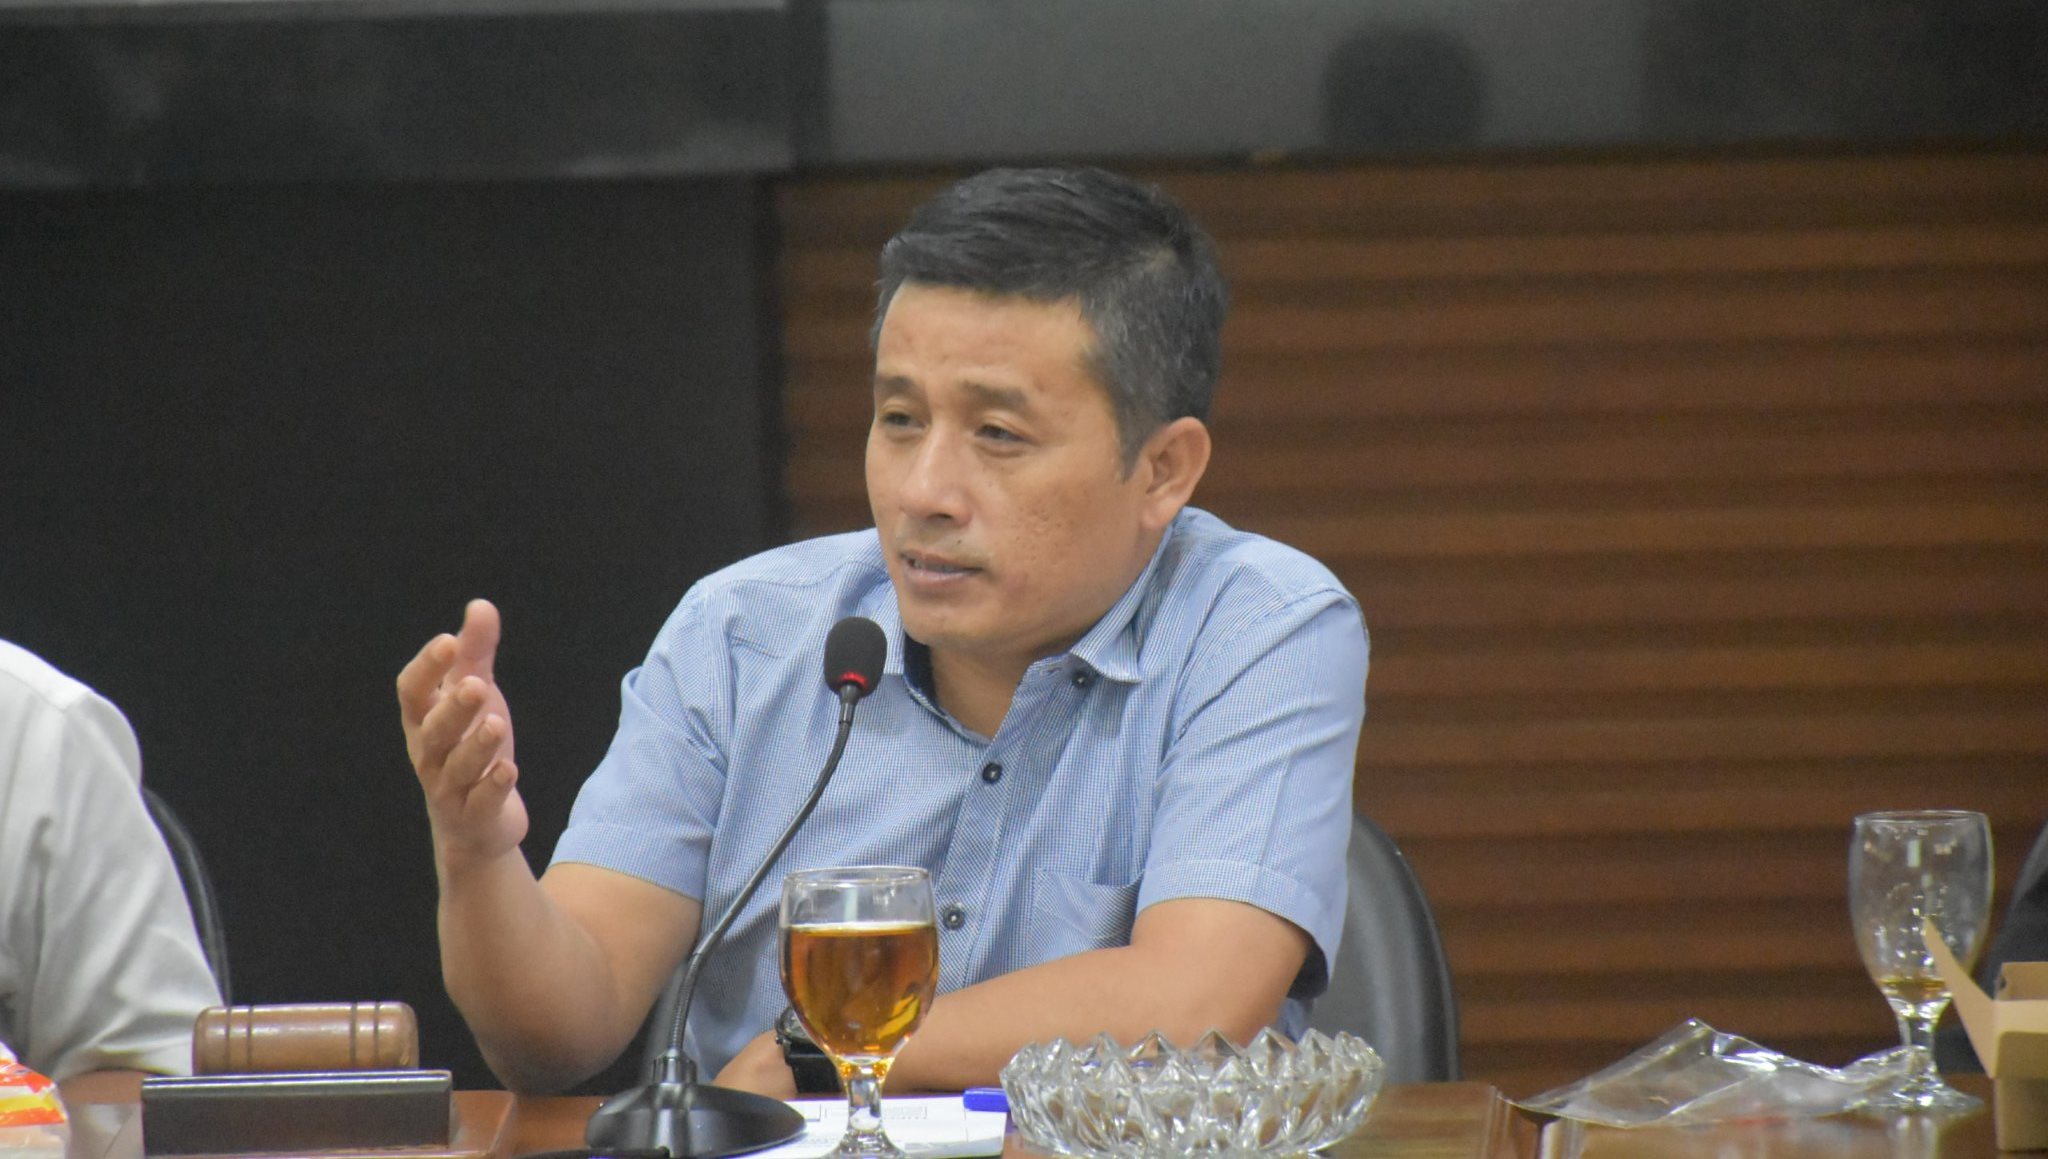 Wakil Ketua DPRD Sarankan Pengelolaan Parkir Kota Tasik Oleh Pihak Ketiga